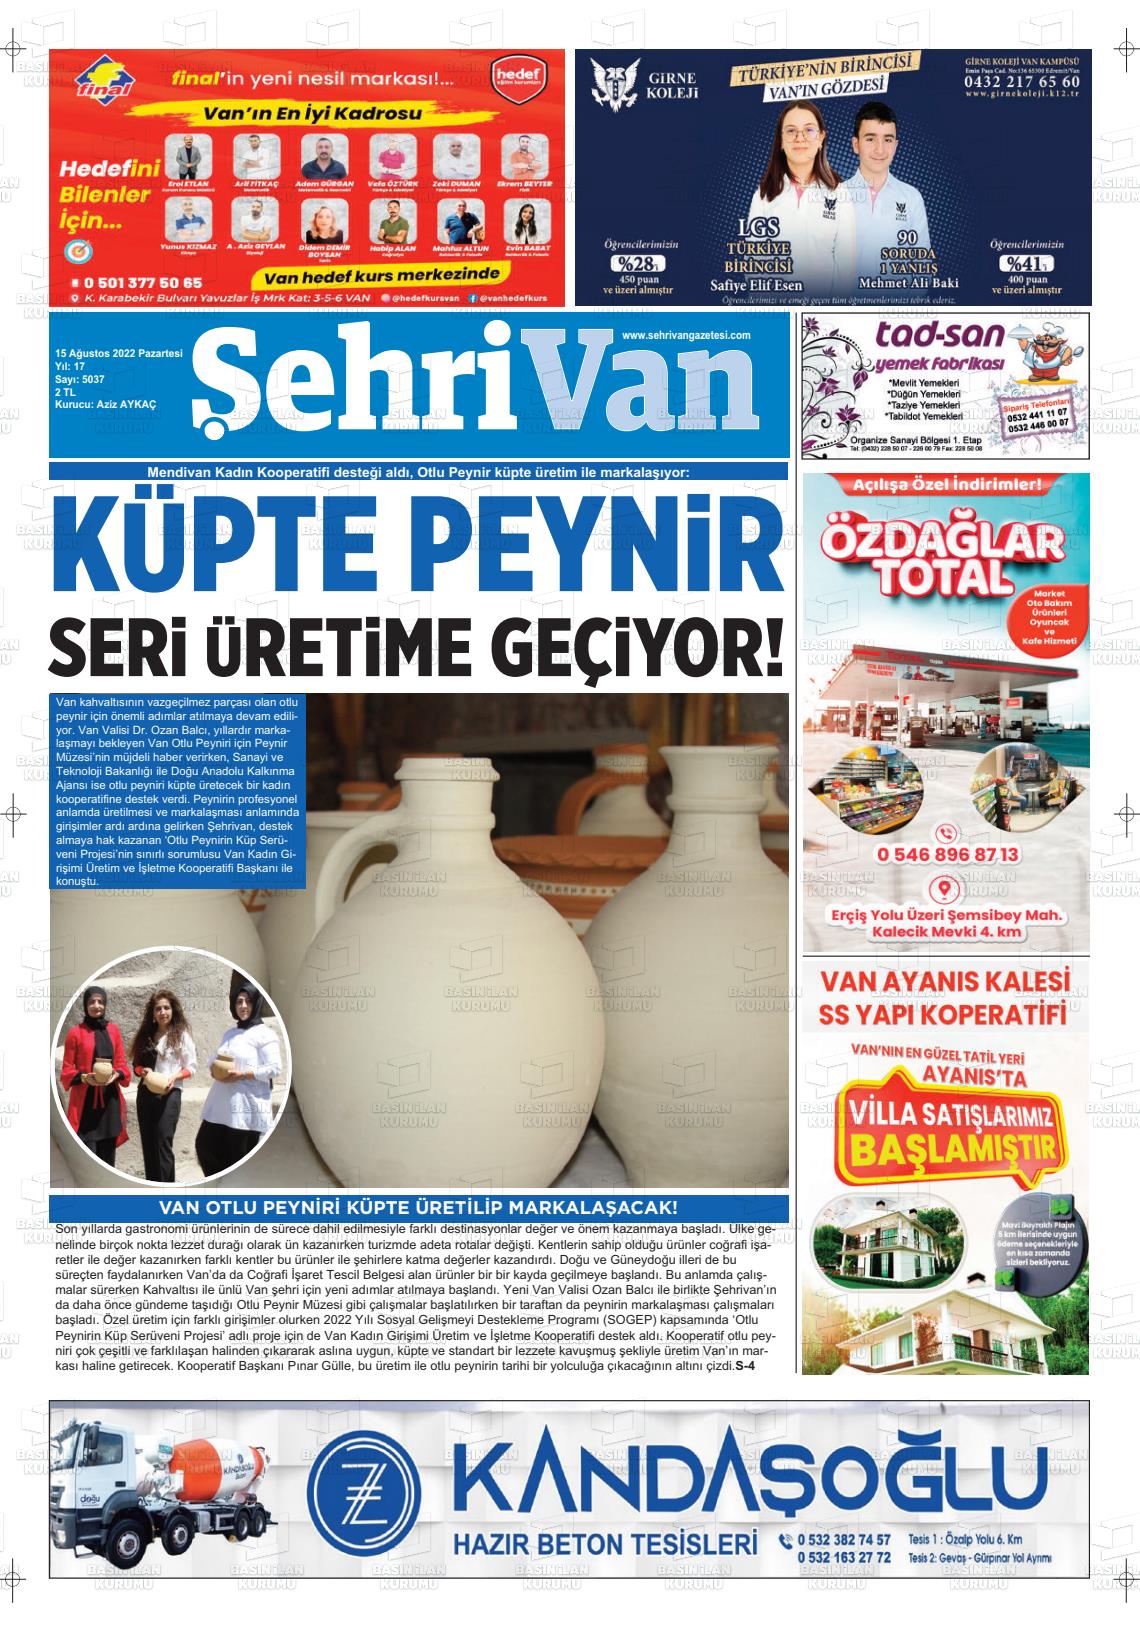 15 Ağustos 2022 Şehrivan Gazete Manşeti